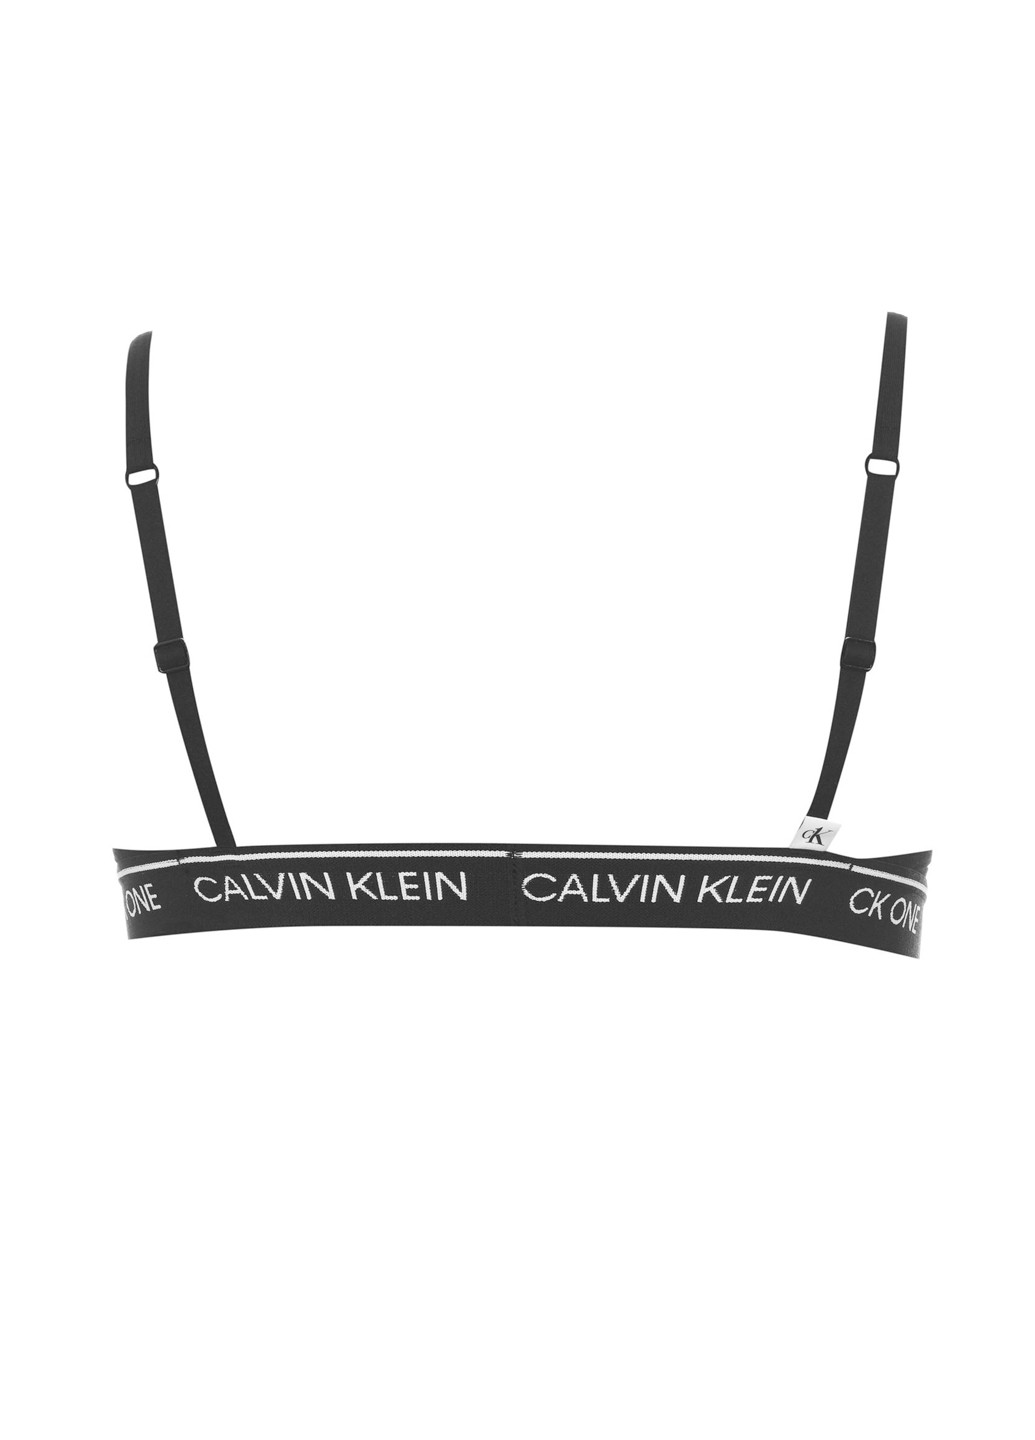 Чёрный бралетт бюстгальтер Calvin Klein без косточек хлопок